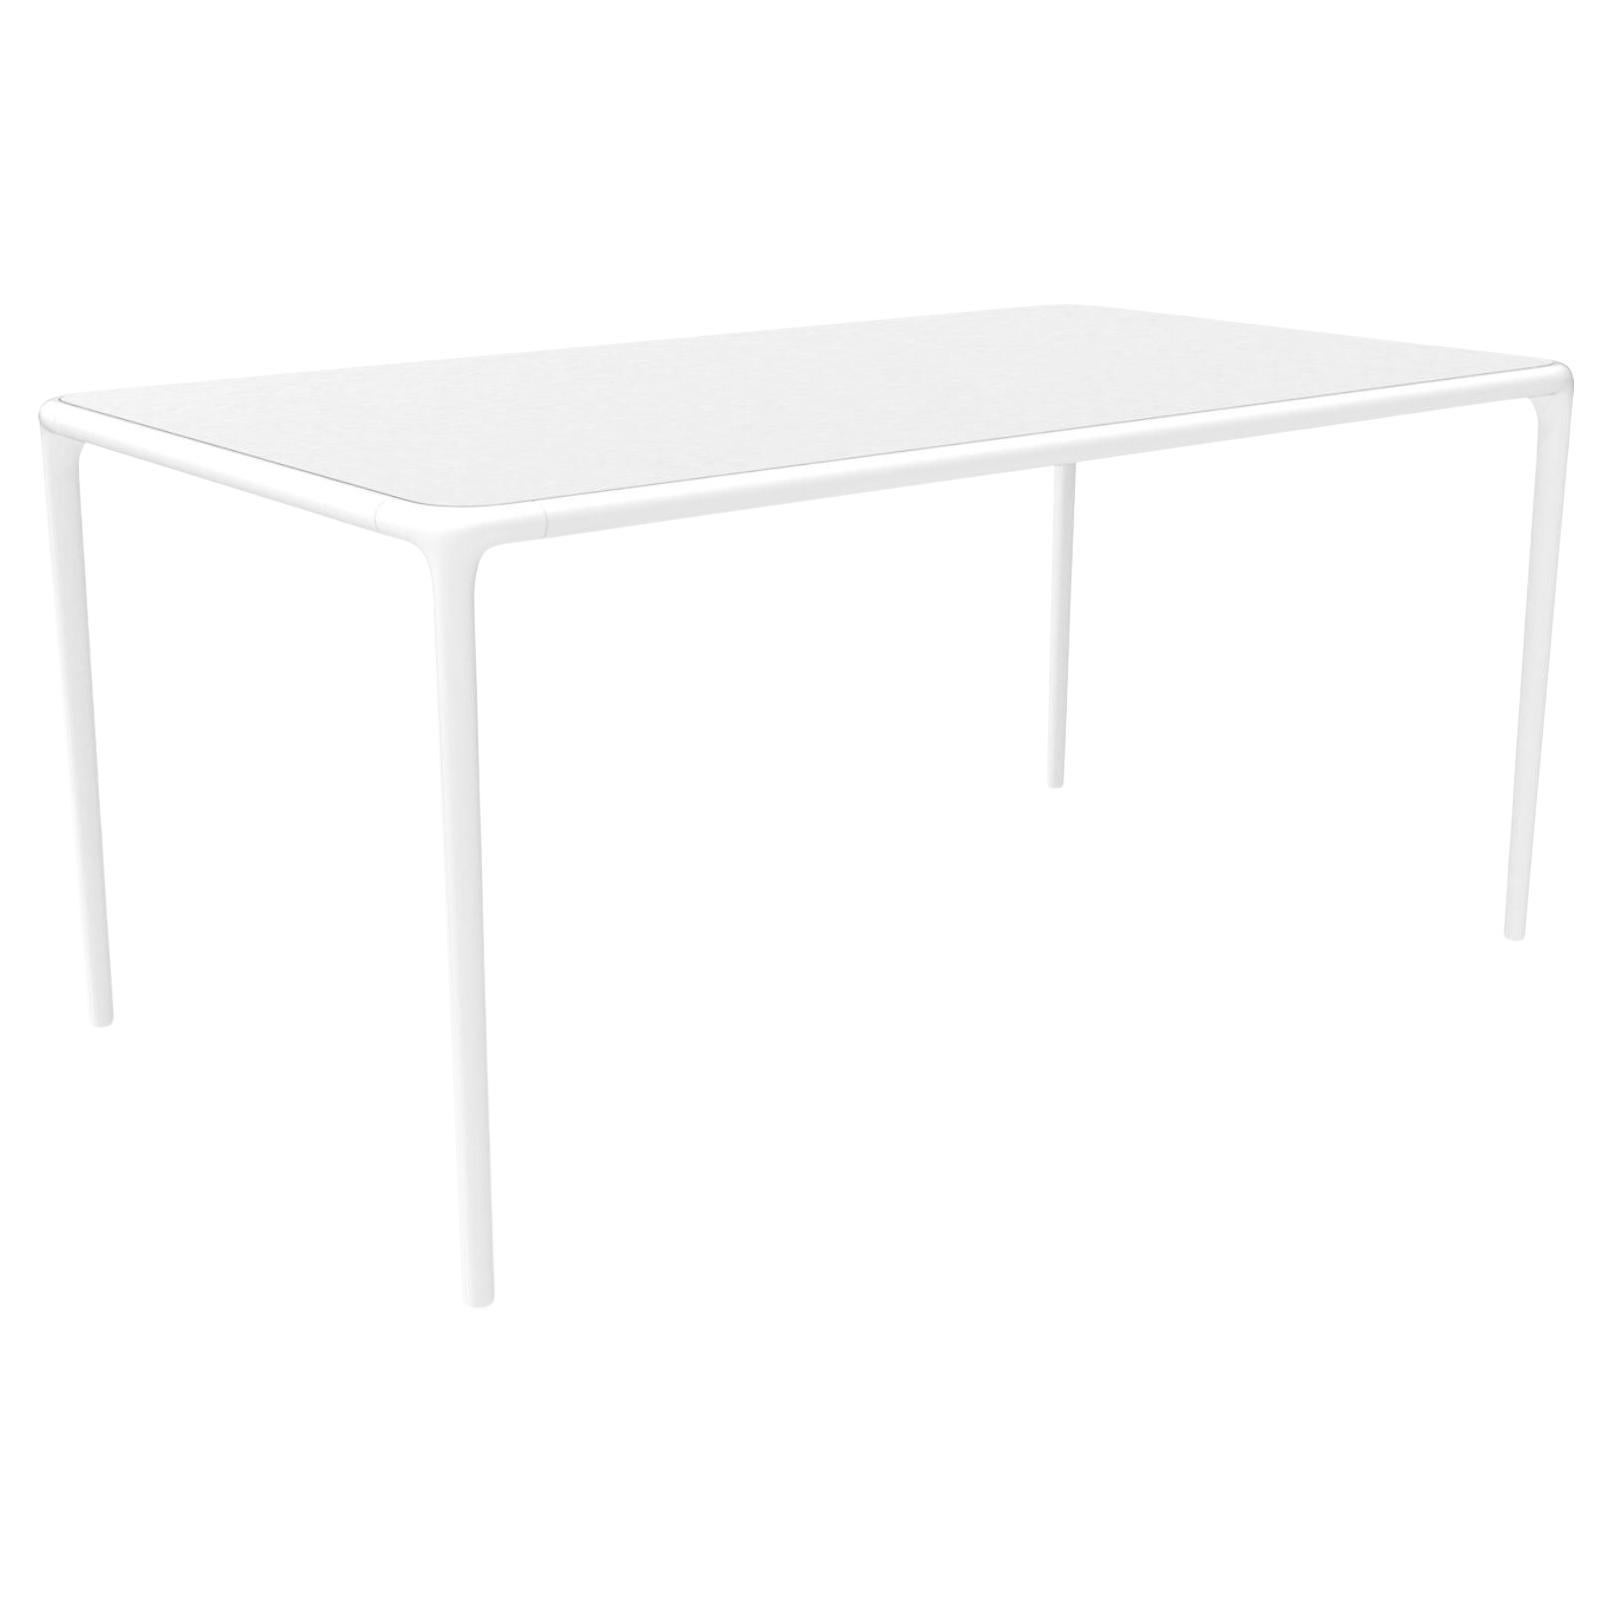 Table Xaloc avec plateau en verre blanc 160 par Mowee